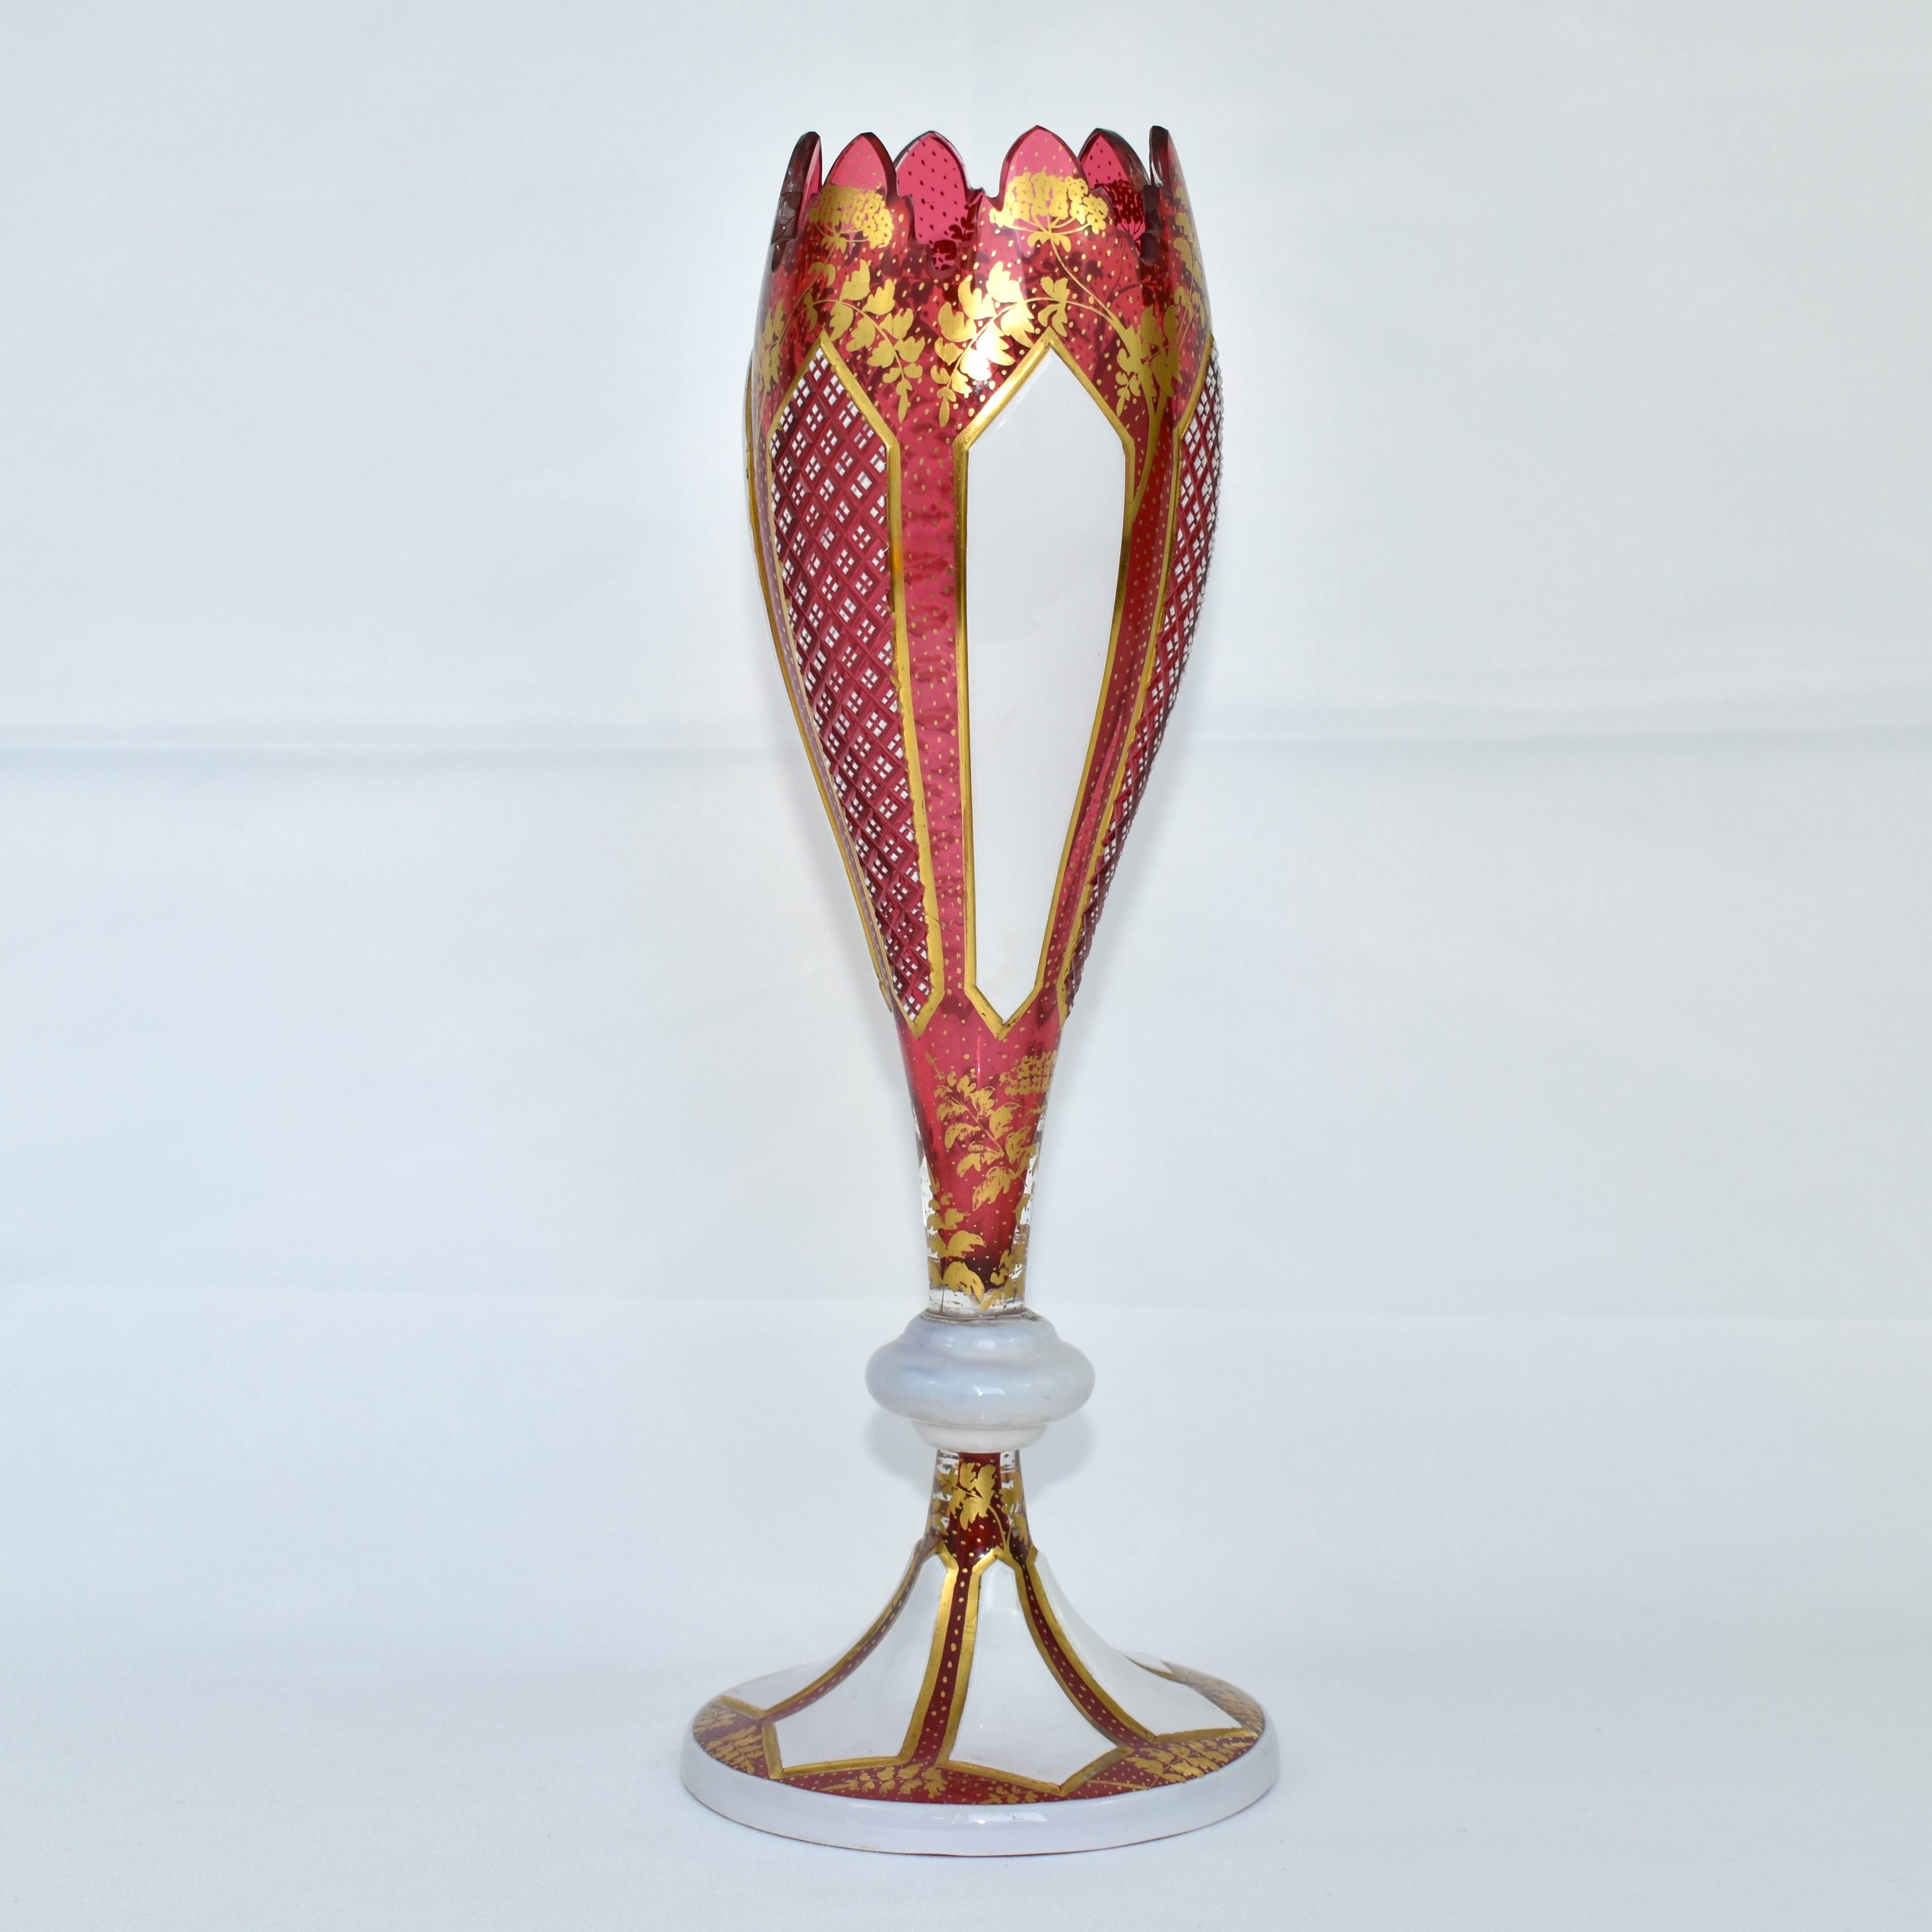 Vase en verre exquis, blanc sur rouge

Cristal clair de canneberge recouvert de verre opalin

Superbe bordure dorée et taillée

Décoration dorée riche et fine sur tout le pourtour

Bohemia, vers 1860.